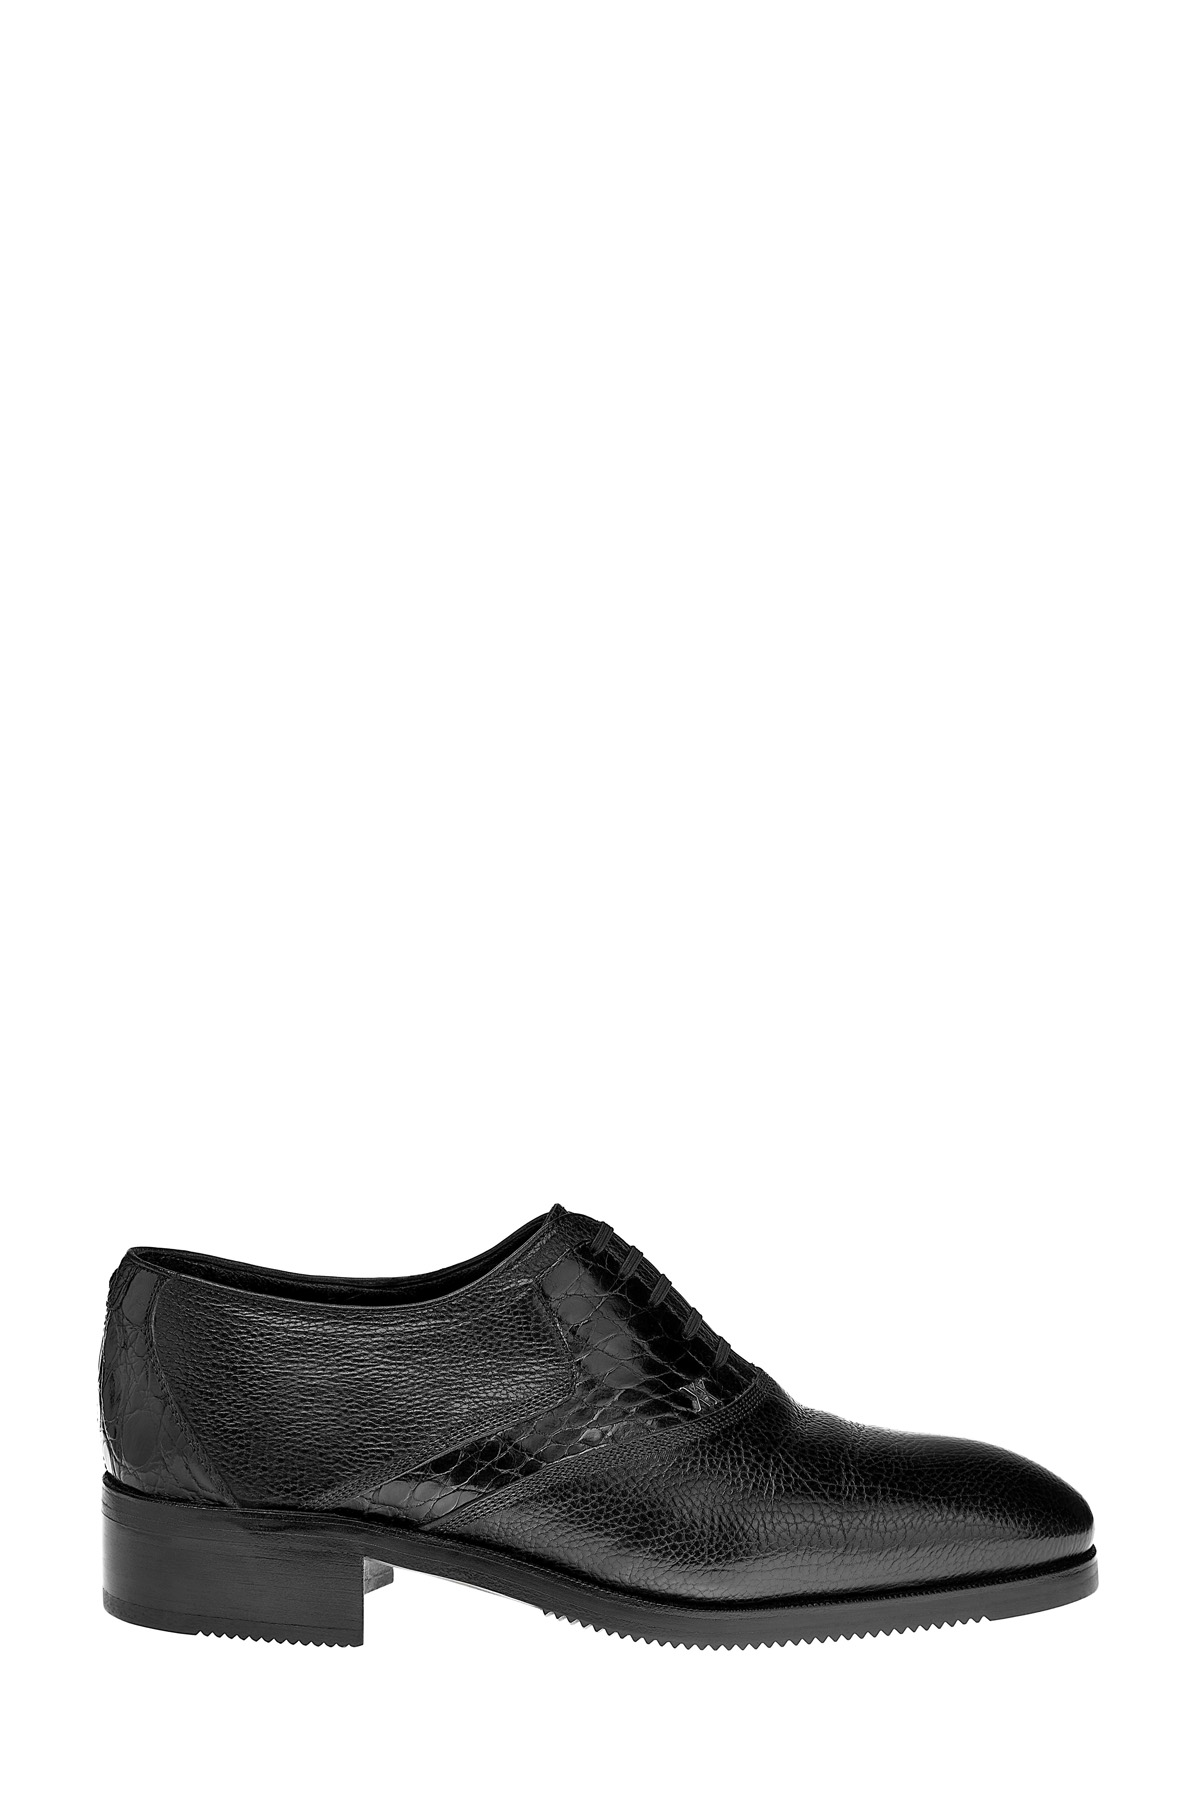 Туфли-оксфорды из фактурной зернистой кожи с подкладкой из меха ARTIOLI, цвет черный, размер 39;40 - фото 1